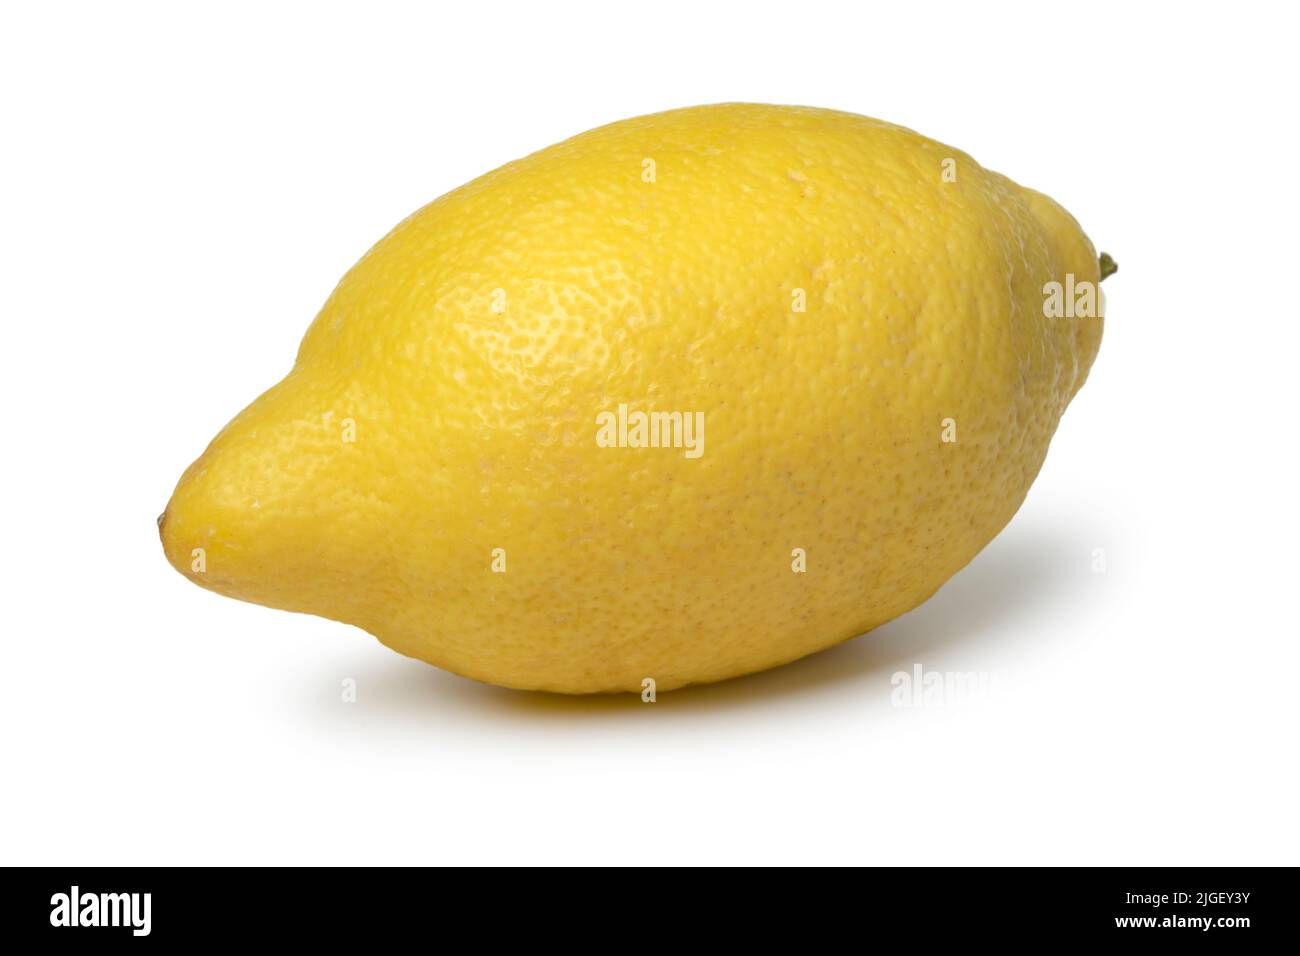 Whole Amalfi lemon close up isolated on white background Stock Photo